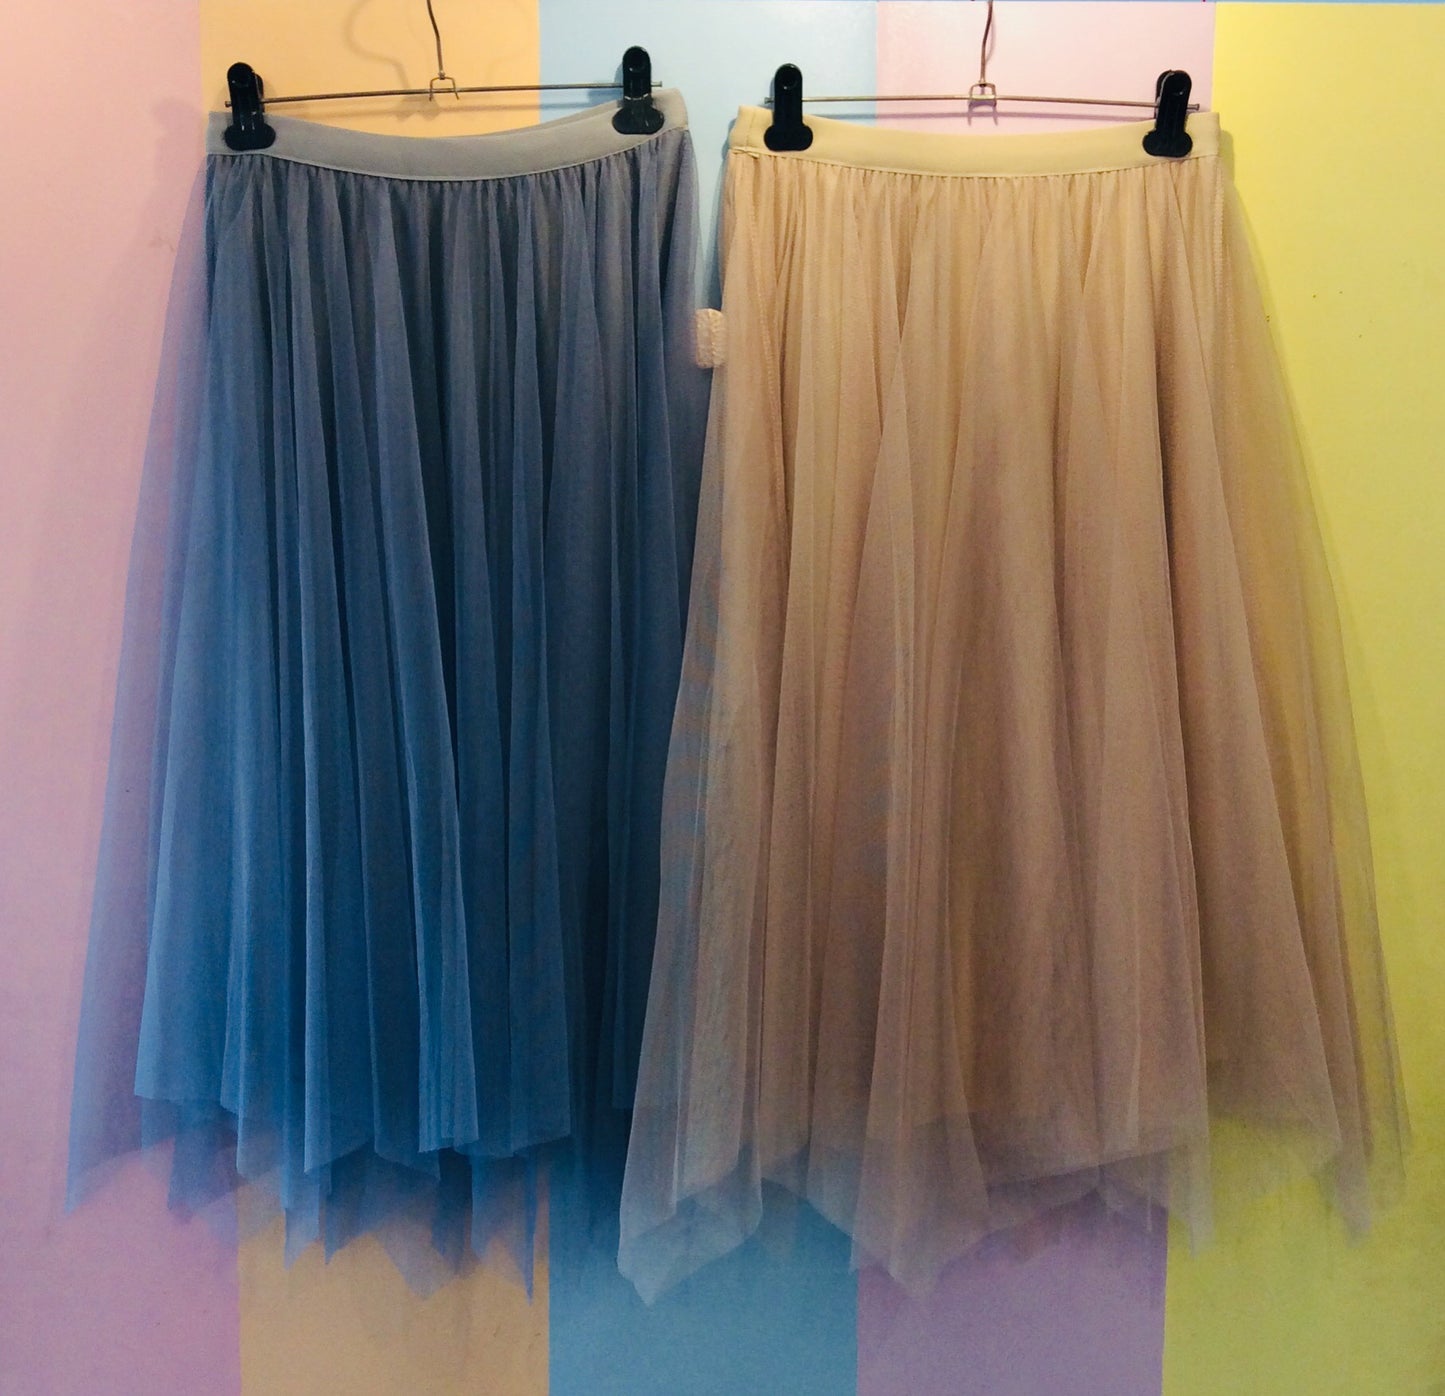 Reversible Pleated Skirt in Velvet & Sheer